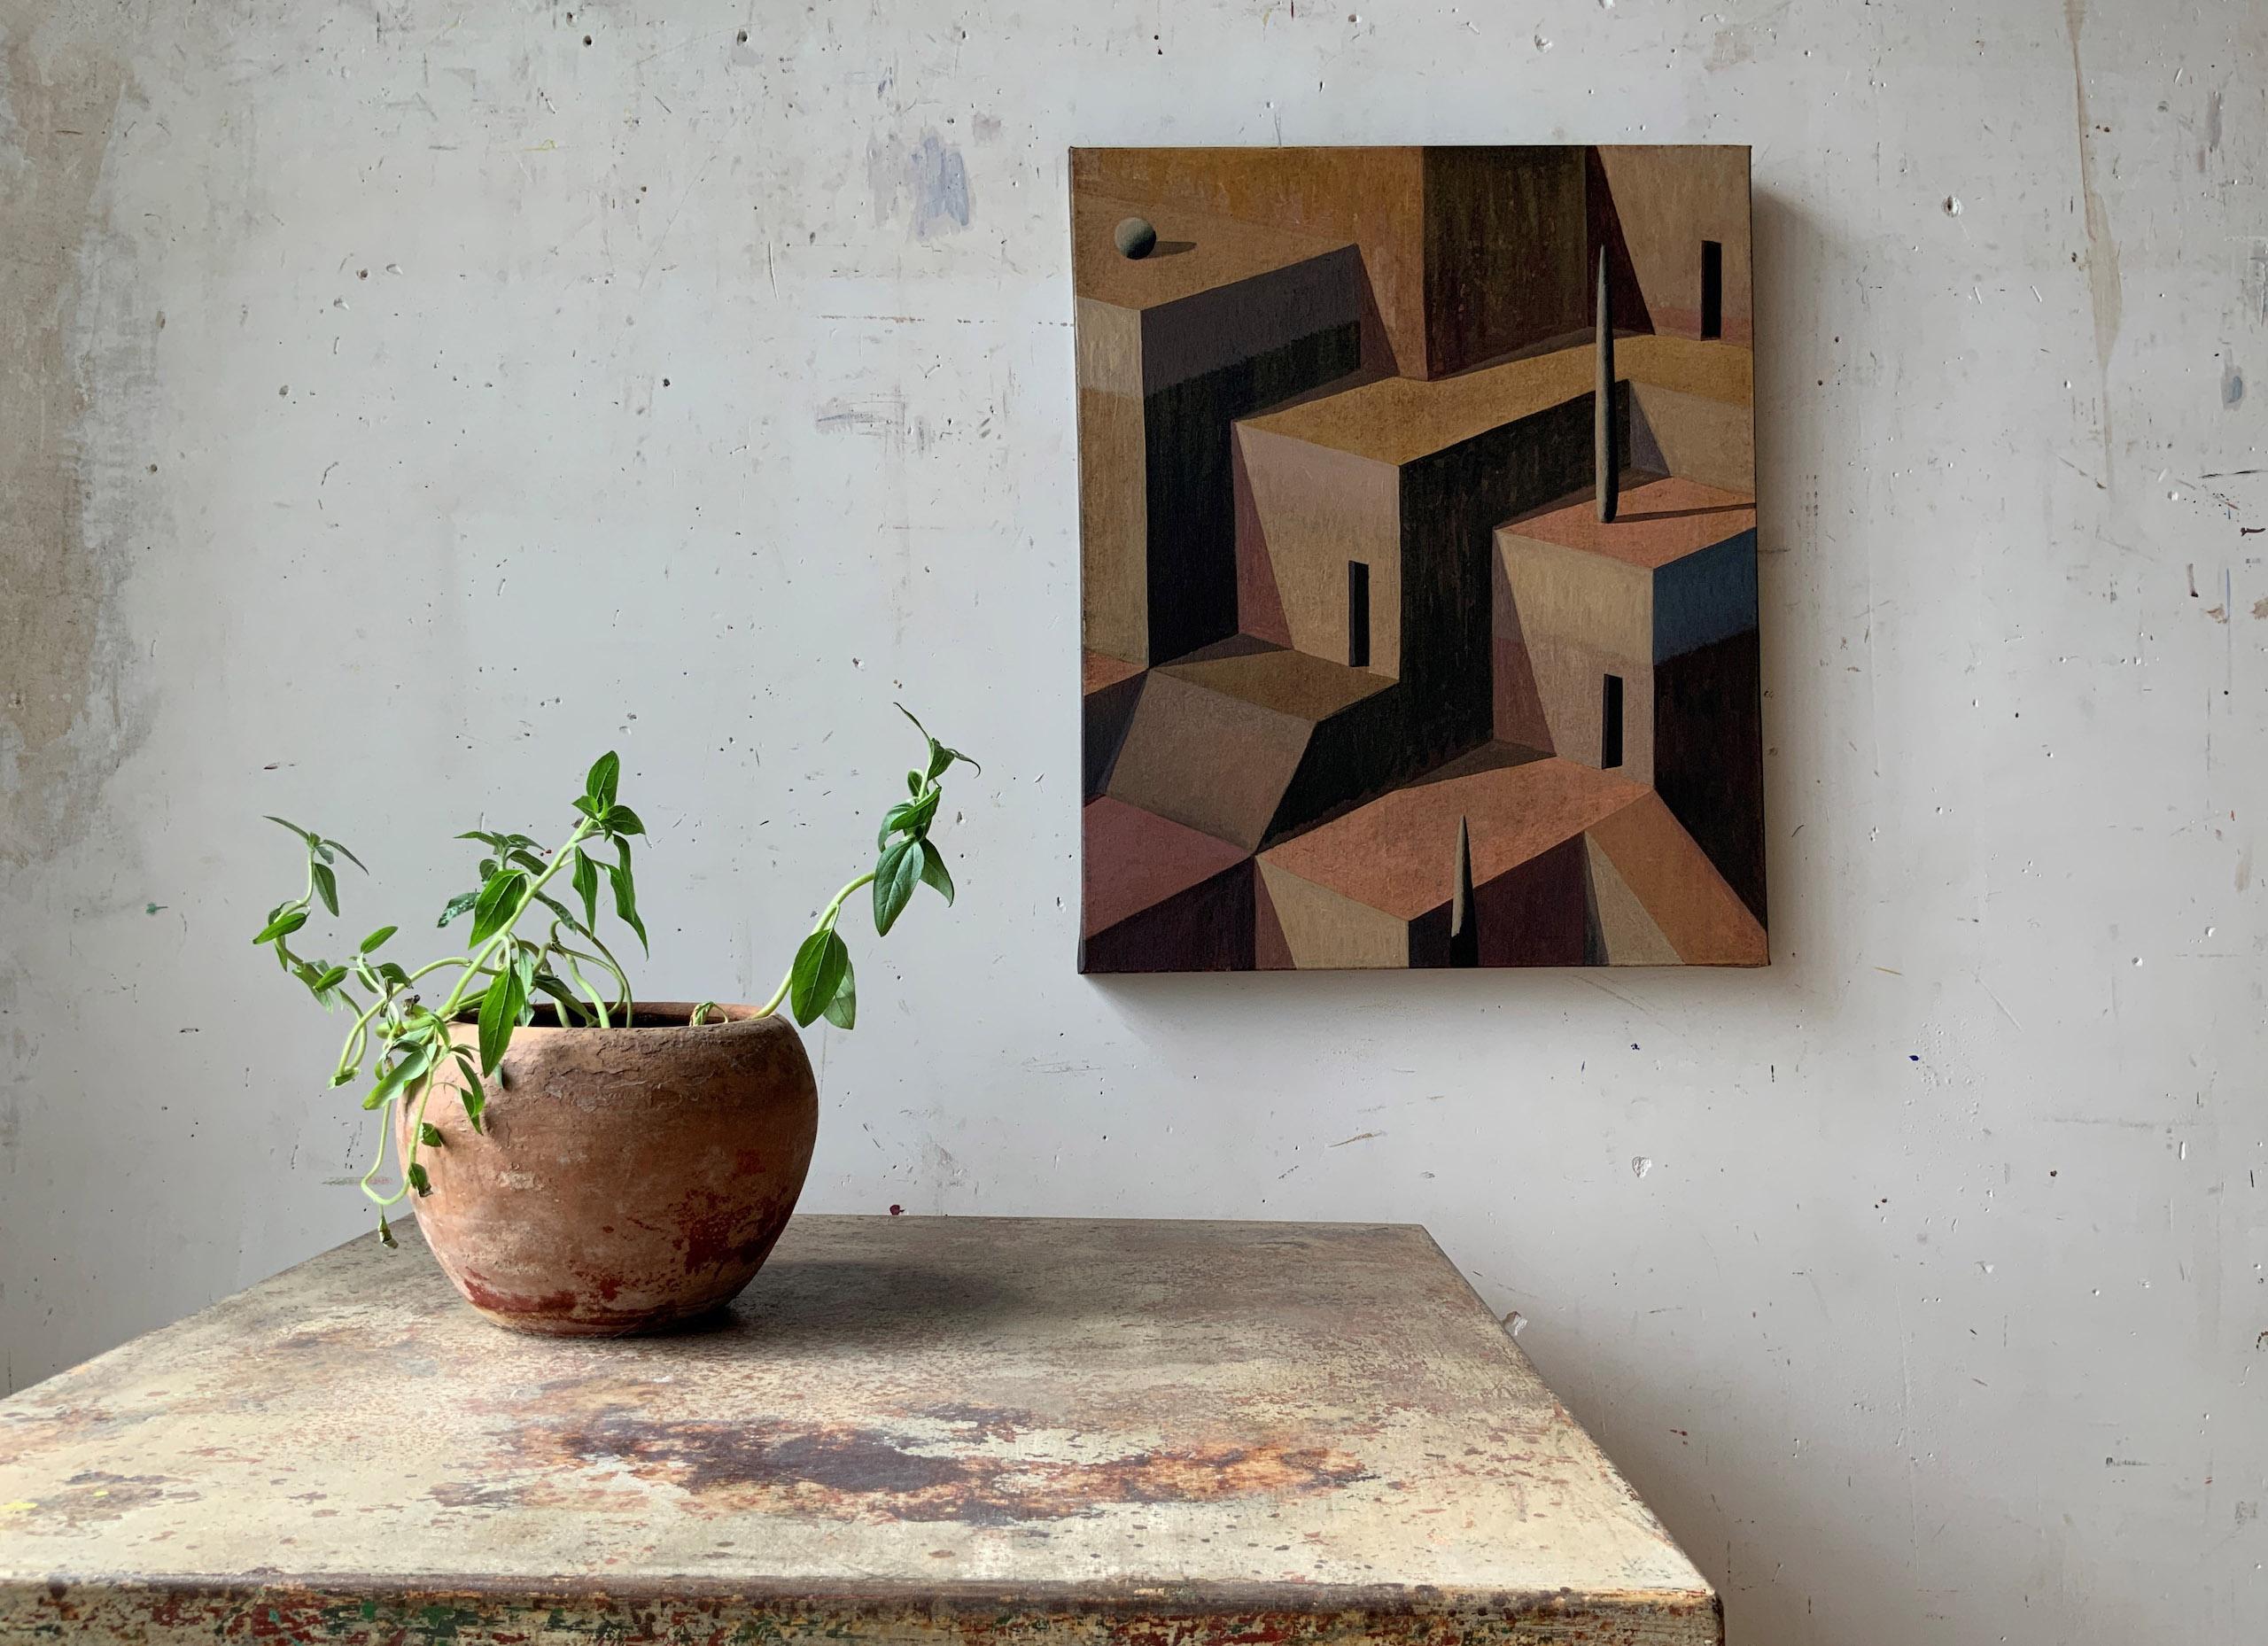 LAB-P by Ramon Enrich - Geometric landscape painting, architecture, warm tones For Sale 1